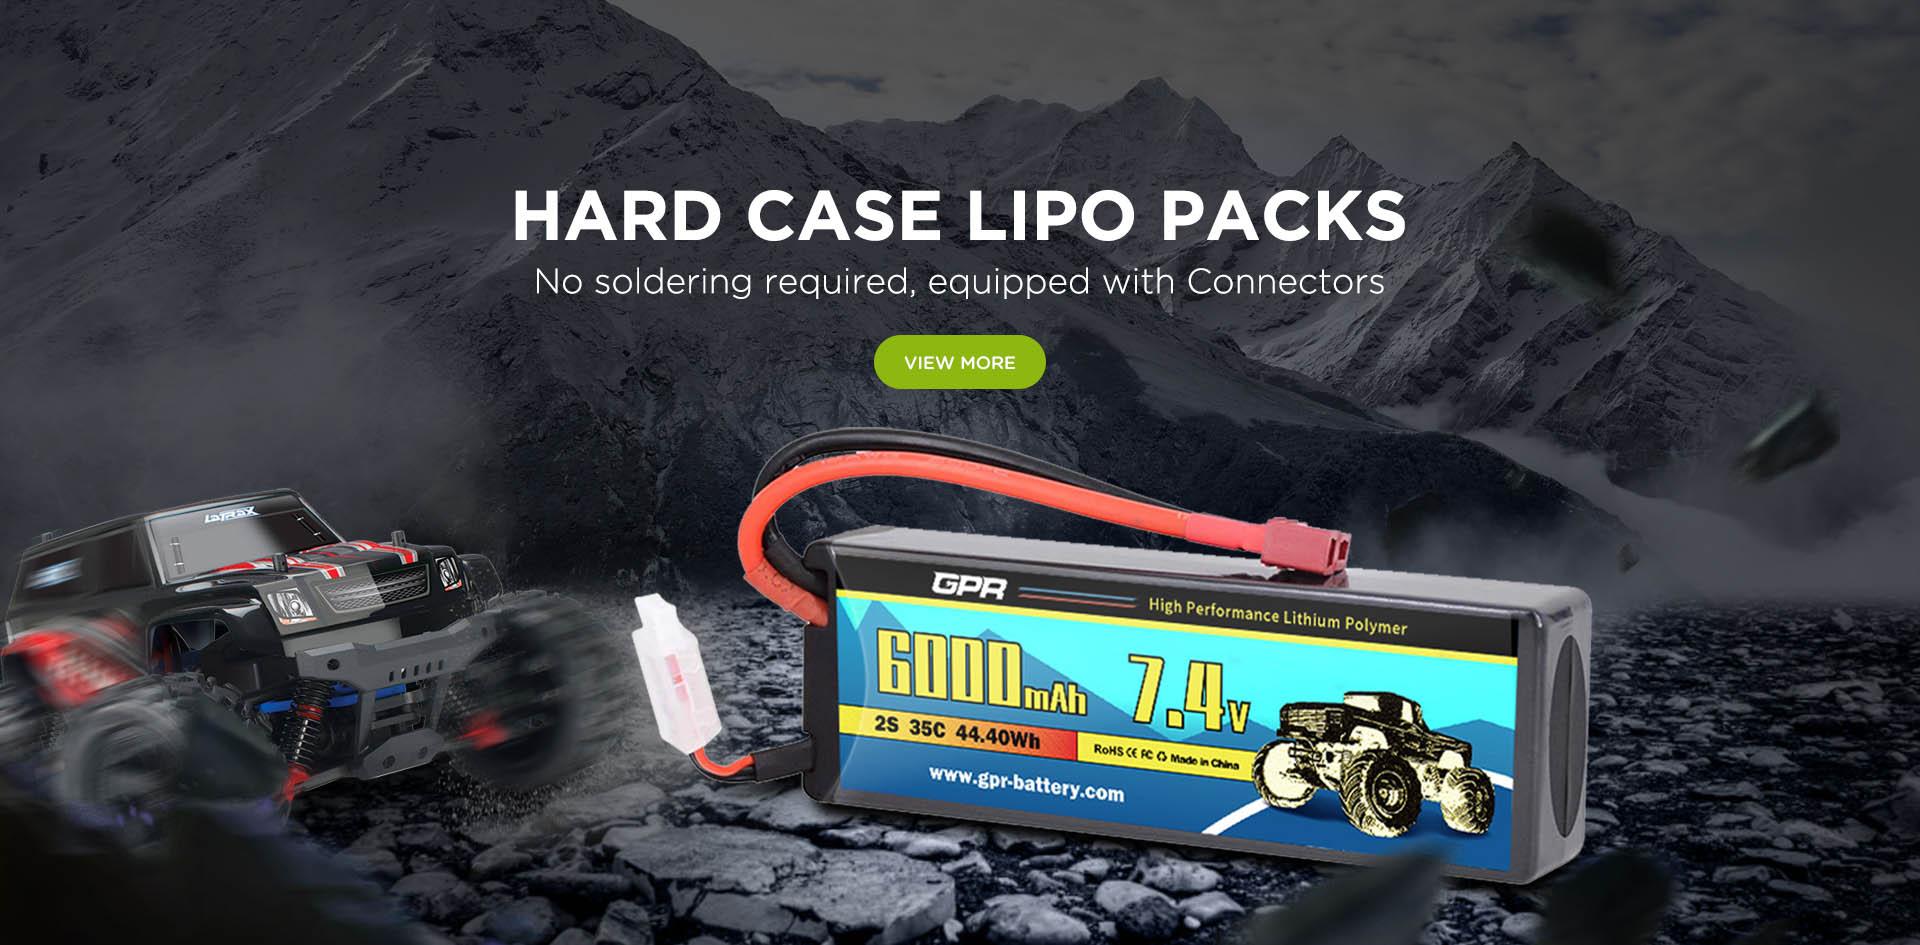 Hard case Lipo Packs